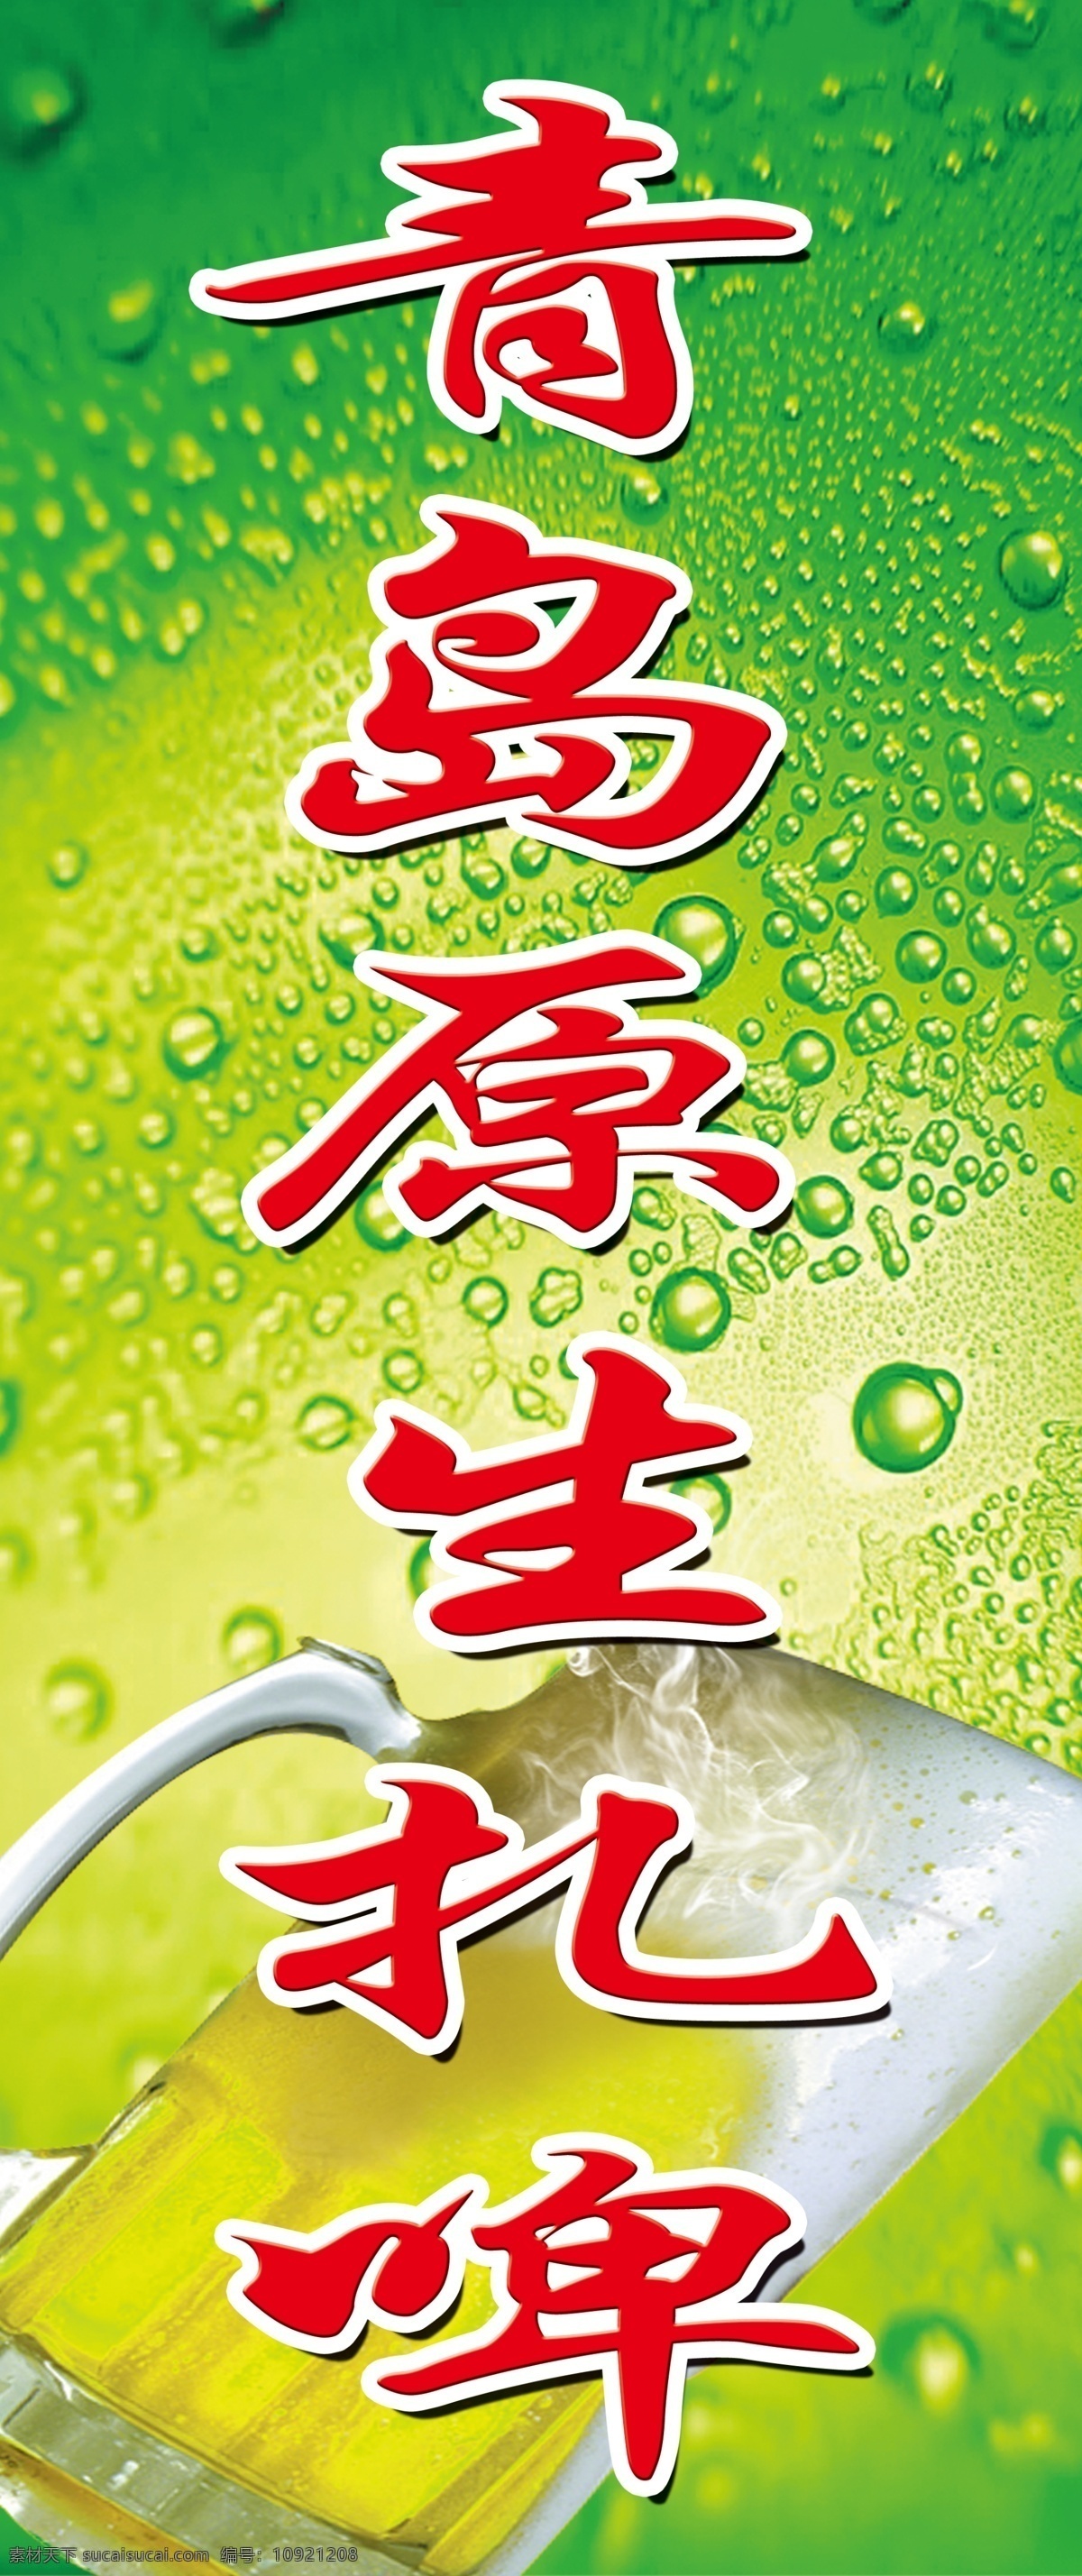 广告设计模板 绿色水珠背景 啤酒杯 啤酒素材 源文件 青岛 原生 扎啤 模板下载 青岛原生扎啤 杯装啤酒